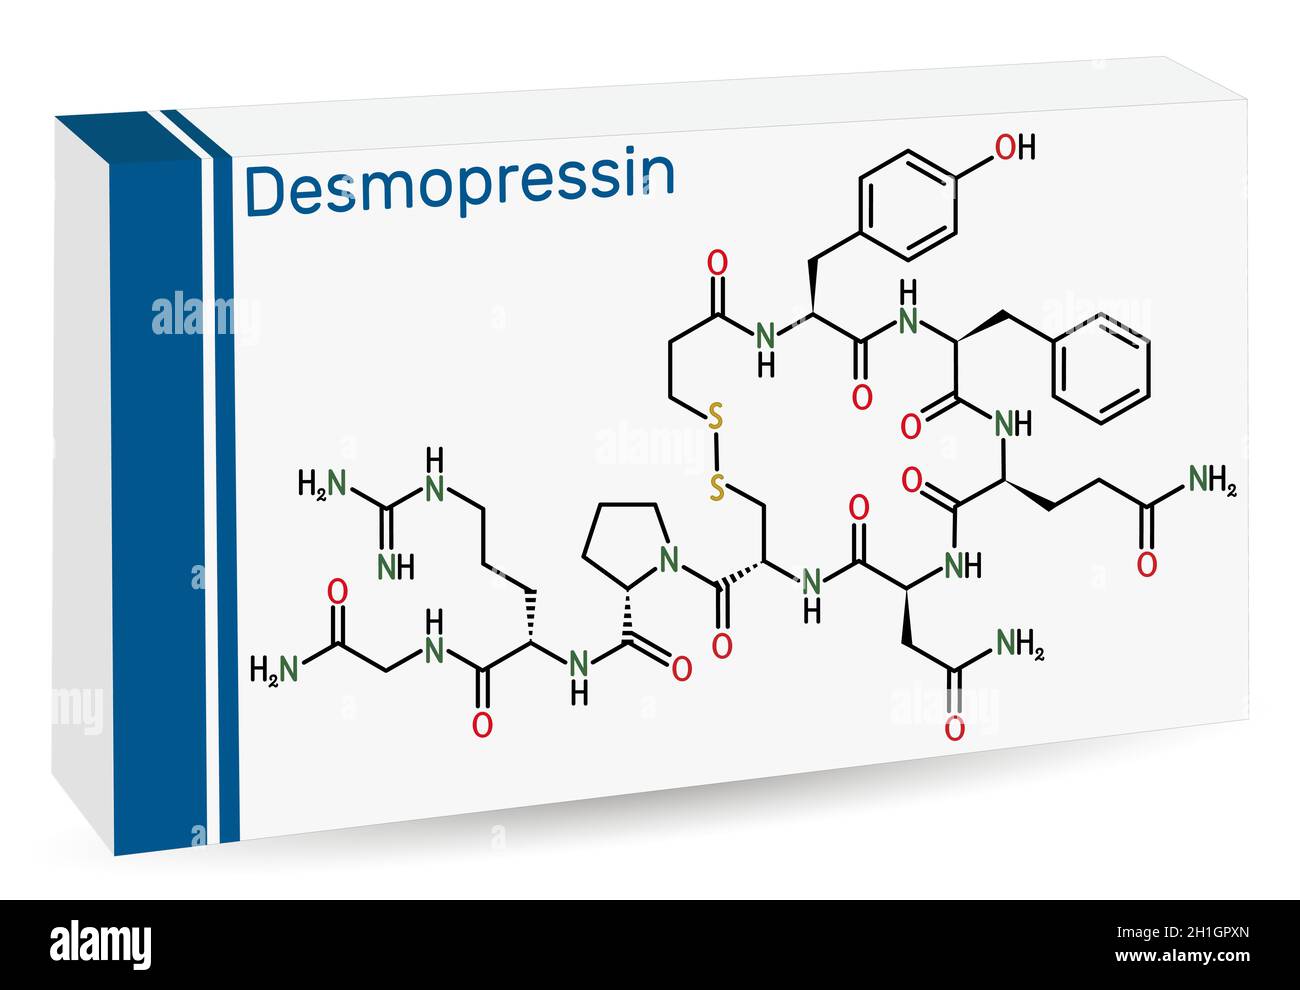 Desmopressine, desmopressine, molécule de desmopressinum.Il s'agit d'un  médicament antidiurétique peptidique, analogue synthétique de la  vasopressine.Formule chimique du squelette.PA Image Vectorielle Stock -  Alamy